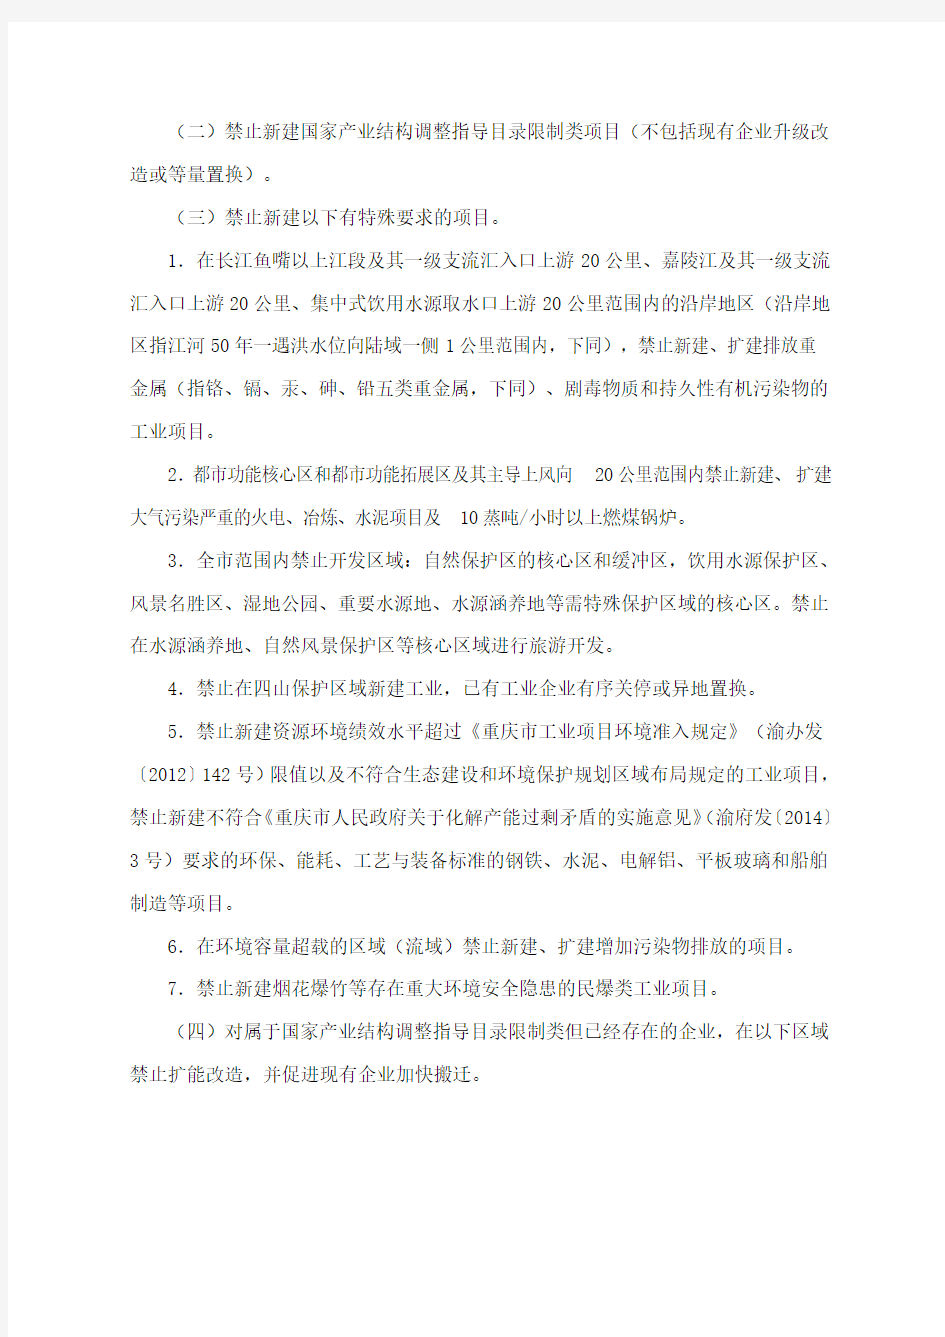 重庆市产业投资禁投清单